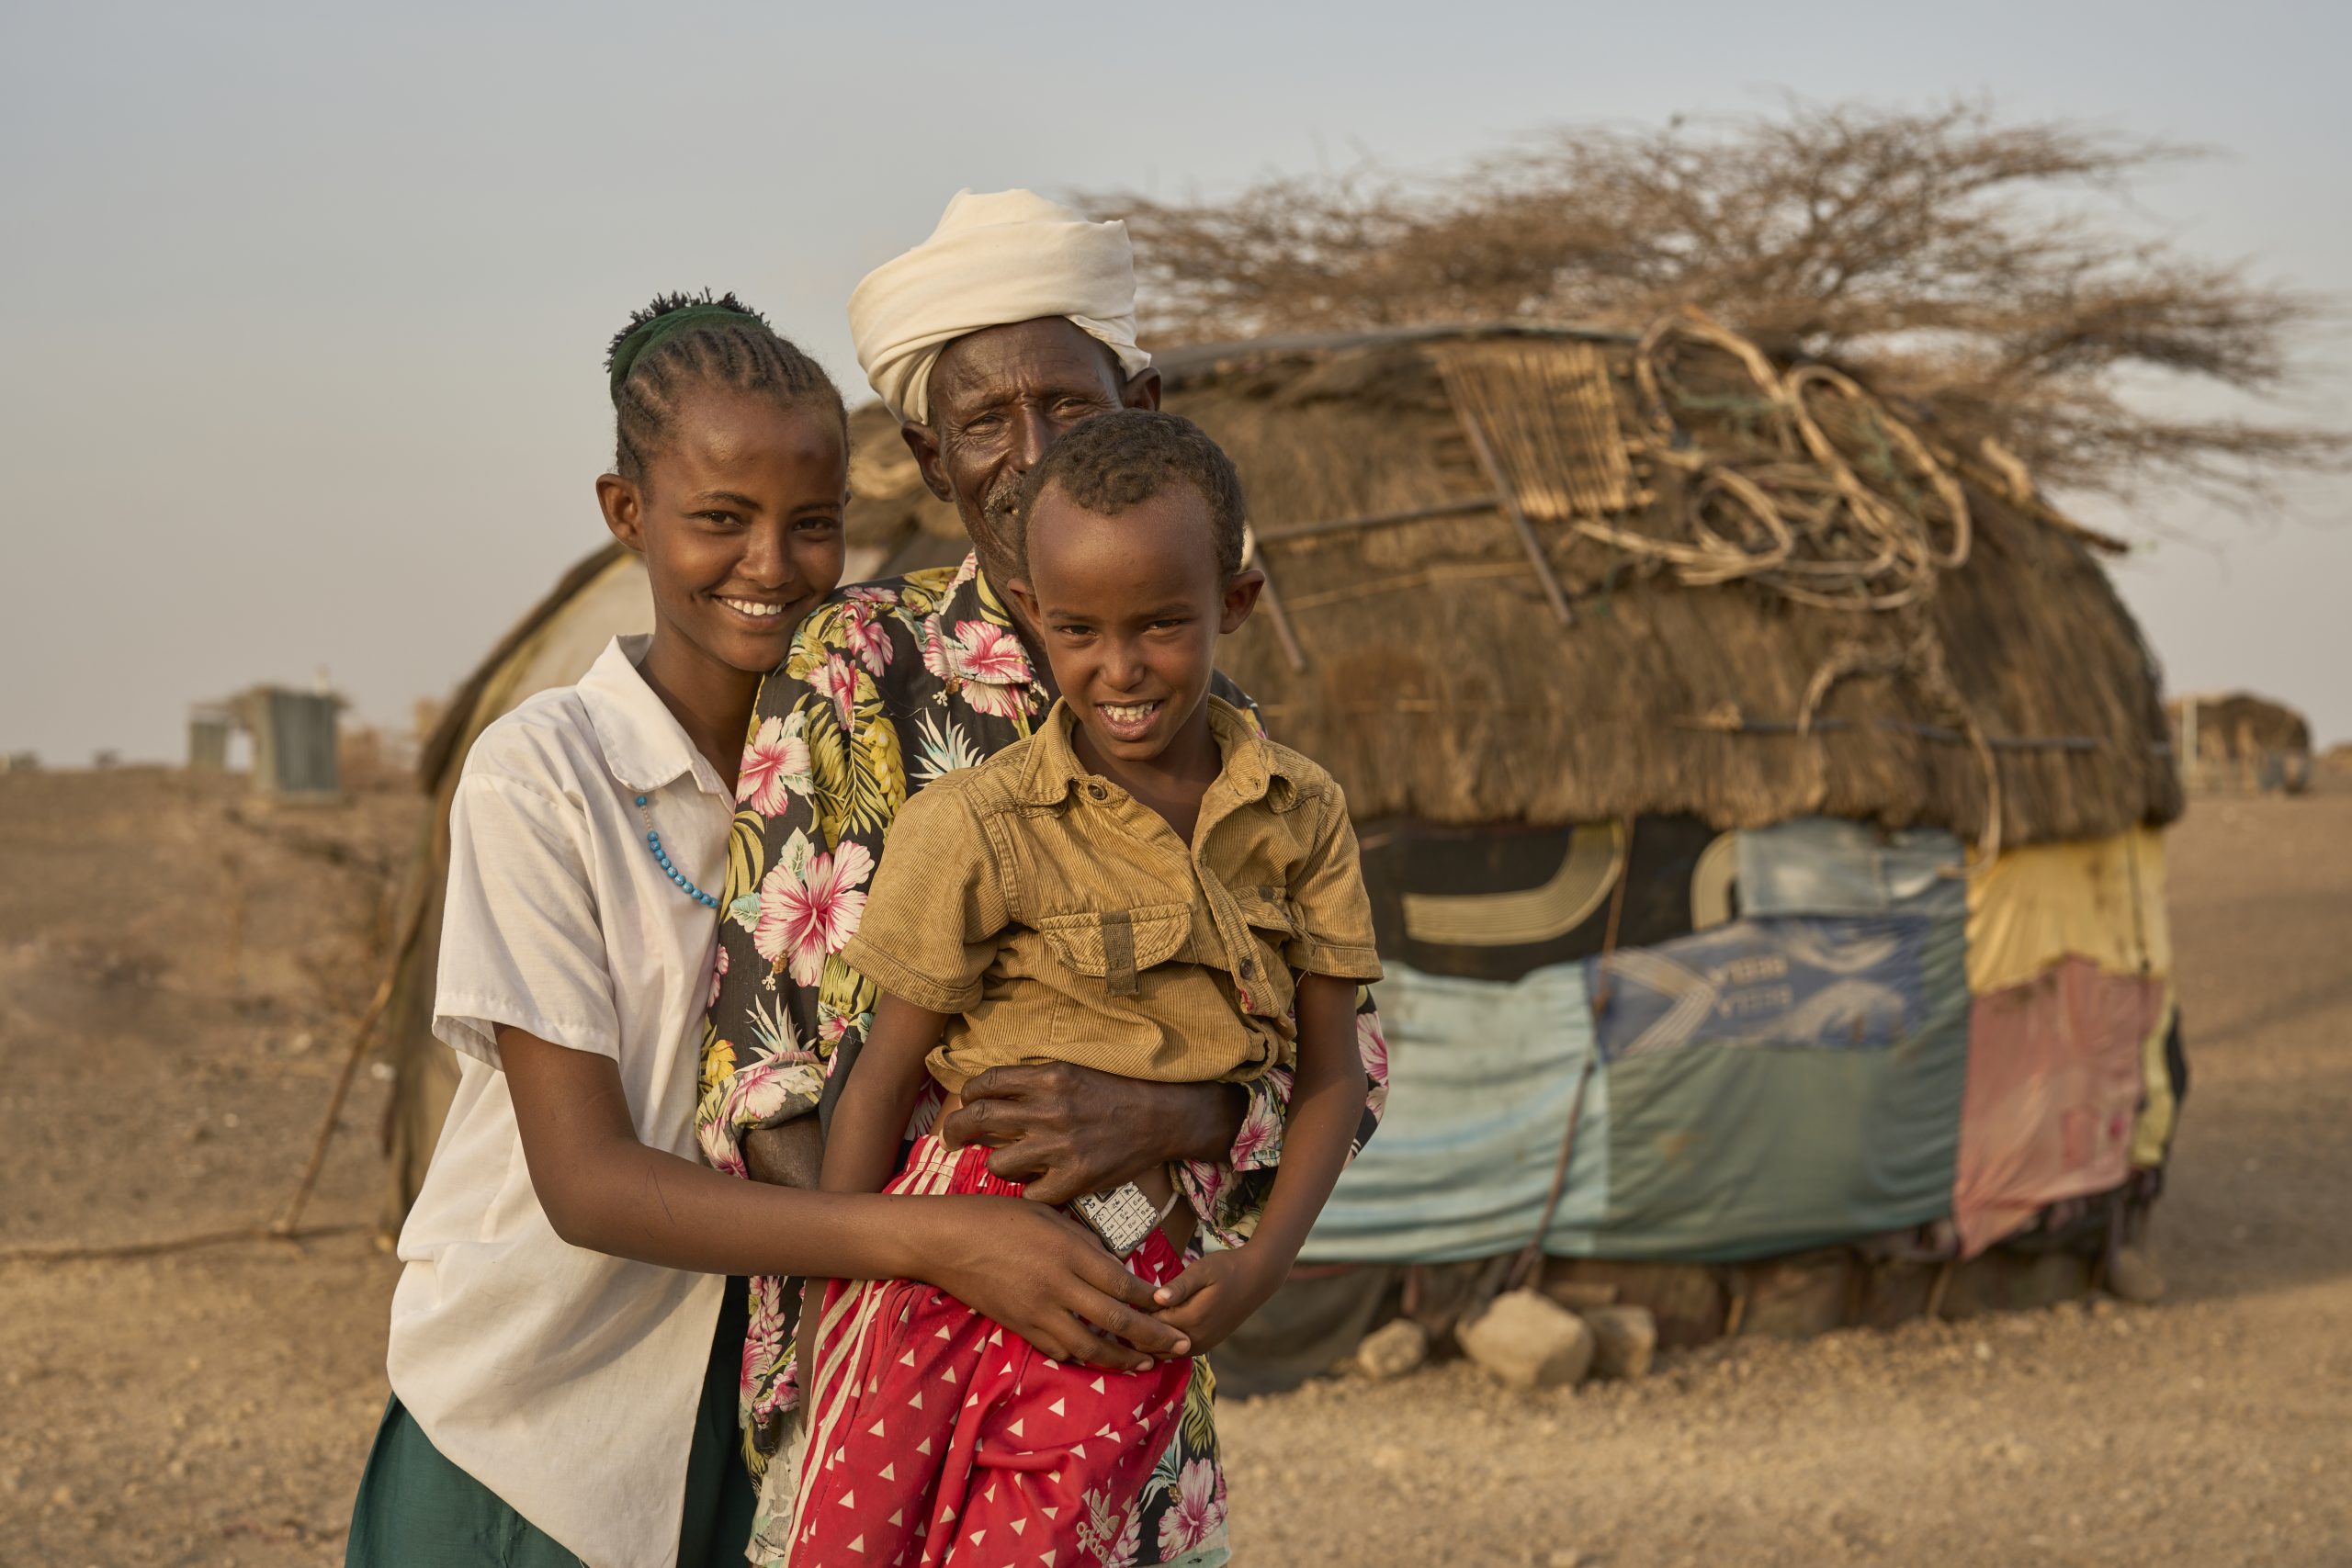 Hoffnung auf bessere Zeiten: Marsabit ist eine karge, von extremer Dürre geplagte Region im Norden von Kenia. Früher konnten sich die Menschen dort aus eigener Kraft ernähren, derzeit sind sie auf humanitäre Hilfe angewiesen.

Juni 2023: Fünf Regenzeiten in Folge hat es in Ostafrika nicht genug geregnet. Die Menschen sind durstig, hungrig und geschwächt. Mehr als 40 Millionen Menschen benötigen dringend Nahrungsmittelhilfe, um zu überleben. 

Gemeinsam mit  einheimischen Helferinnen und Helfern kämpft Caritas international mit den Menschen in ganz Ostafrika gegen den Hunger. Die Hilfsmaßnahmen sind stets an die Begebenheitenvor Ort und die Bedürfnisse der Menschen angepasst. Die Caritas-Partnerorganisationen transportieren Hilfsgüter in abgelegene Gebiete und sichern mit Nahrungsmitteln und Trinkwasser das Überleben der Menschen. Gleichzeitig sollen die Menschen langfristig wieder in die Lage versetzt werden, ein eigenes Einkommen zu erzielen und ausreichend Erträge zu ernten, um für ihr Leben selbst sorgen zu können.

Foto: Sebastian Haury/Caritas international

Copyright Caritas international, Abdruck honorarfrei, Belegexemplar erbeten, Tel: 0761/ 200-288

Mehr Infos: https://www.caritas-international.de/informieren/themen/duerre-in-ostafrika/duerre-in-ostafrika